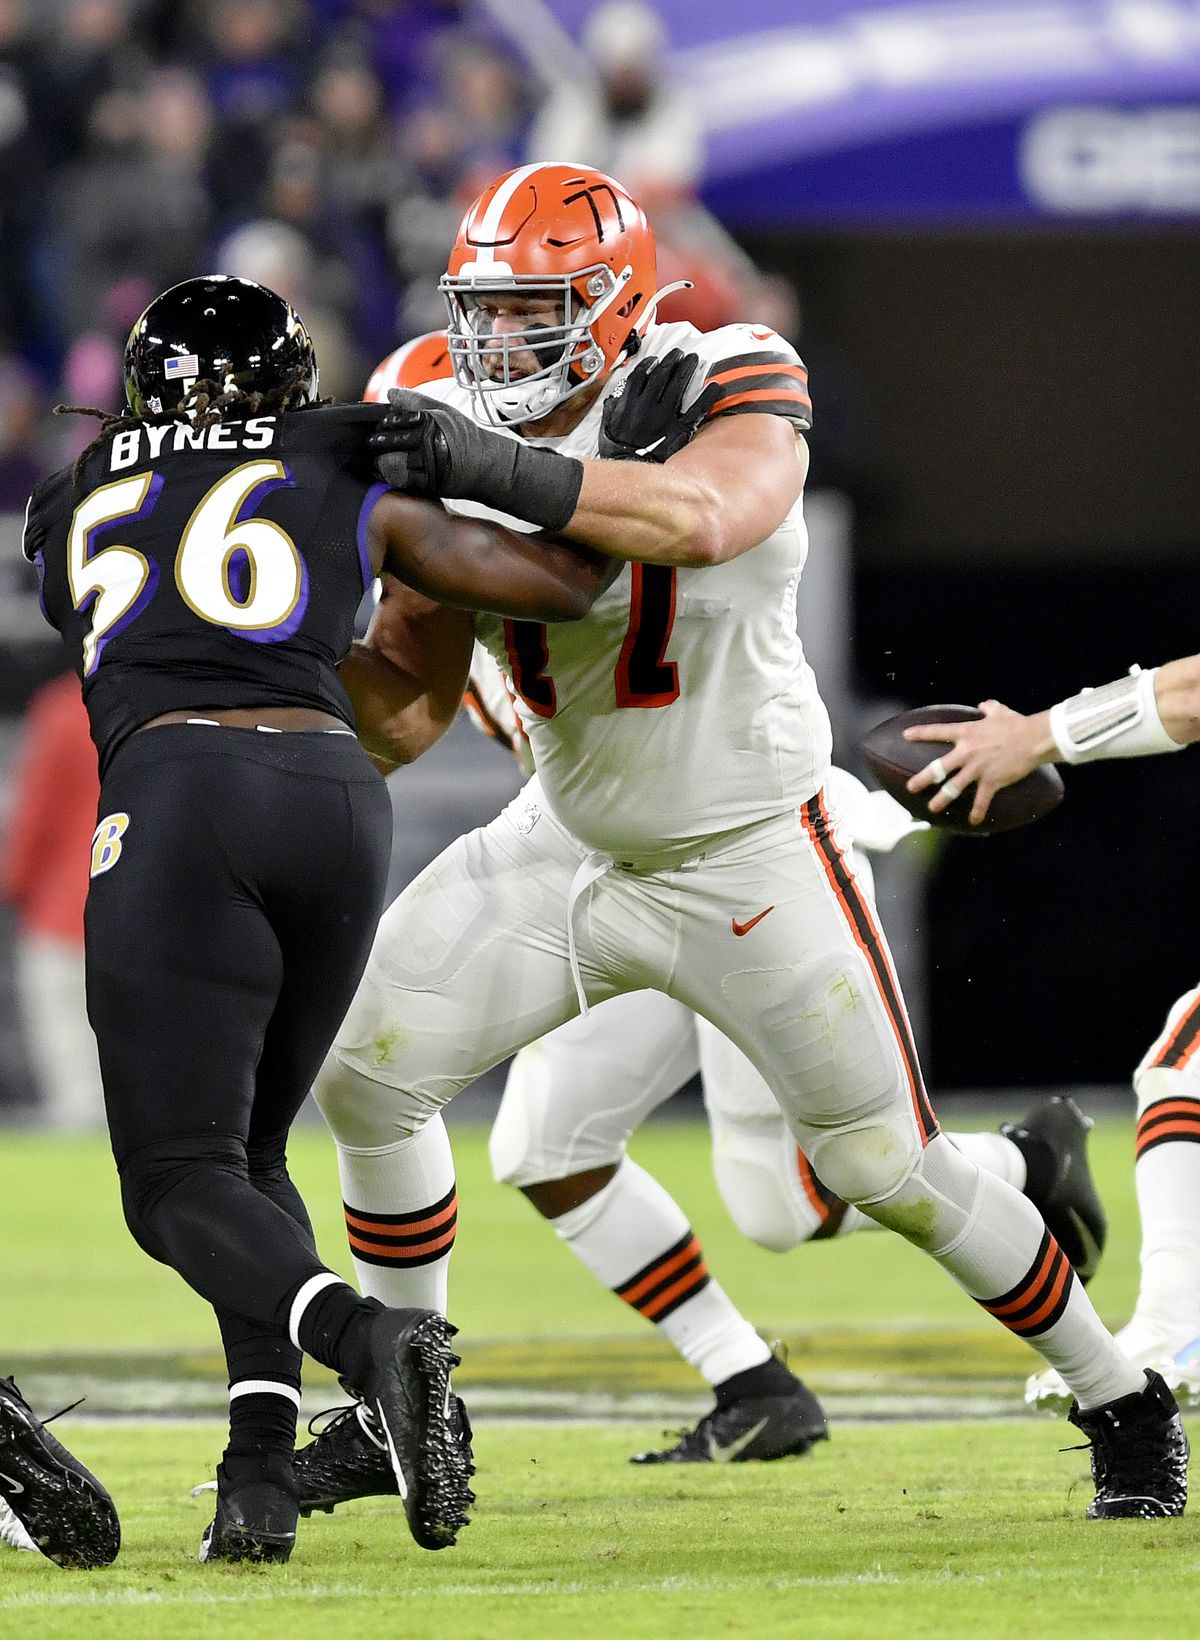 NFL: NOV 28 Browns at Ravens